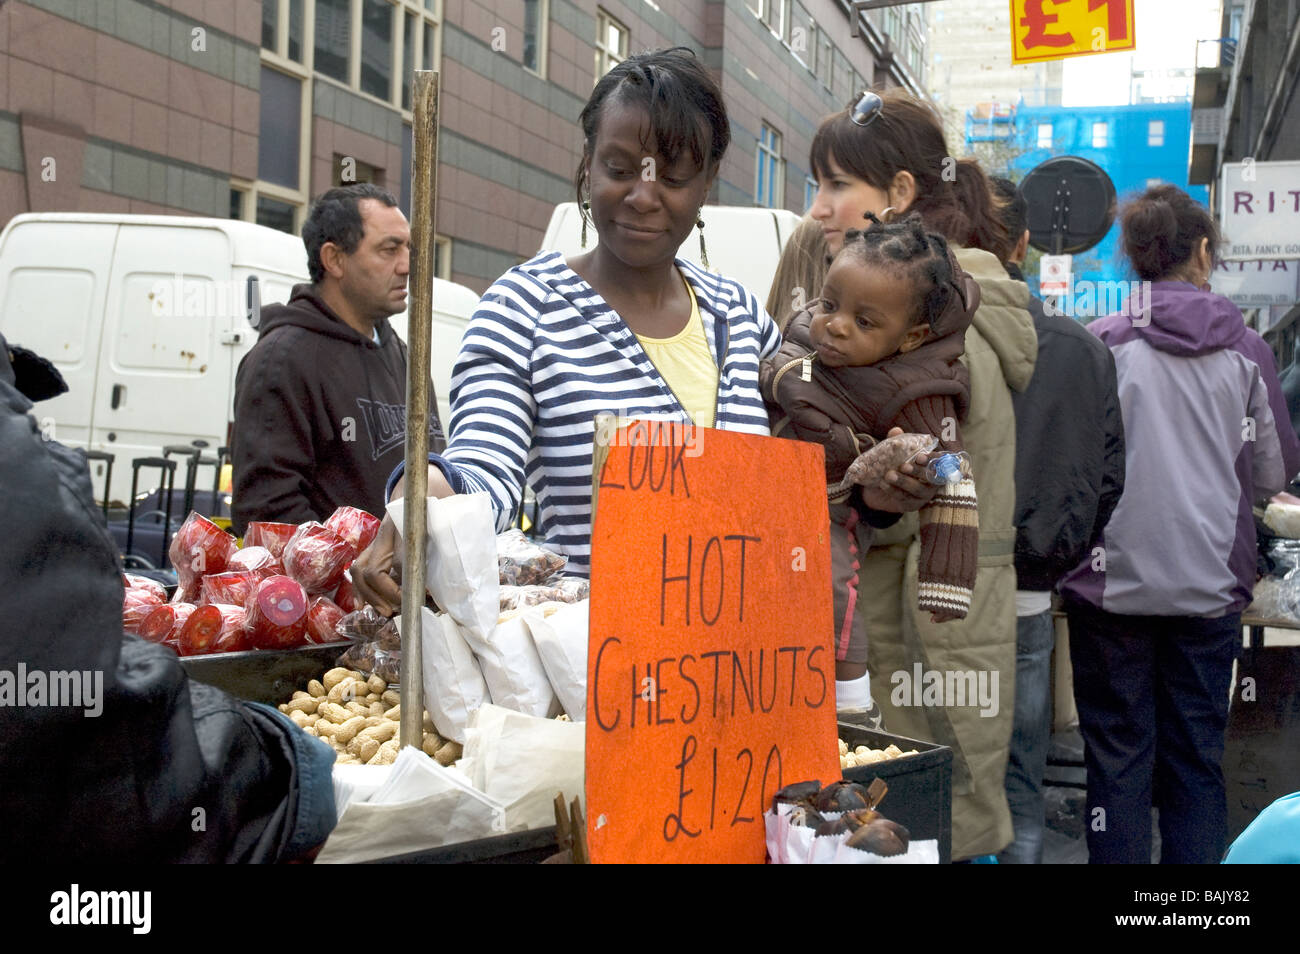 Une mère et son enfant acheter chesnuts Petticoat Lane Street à Londres Angleterre Markeyt Banque D'Images